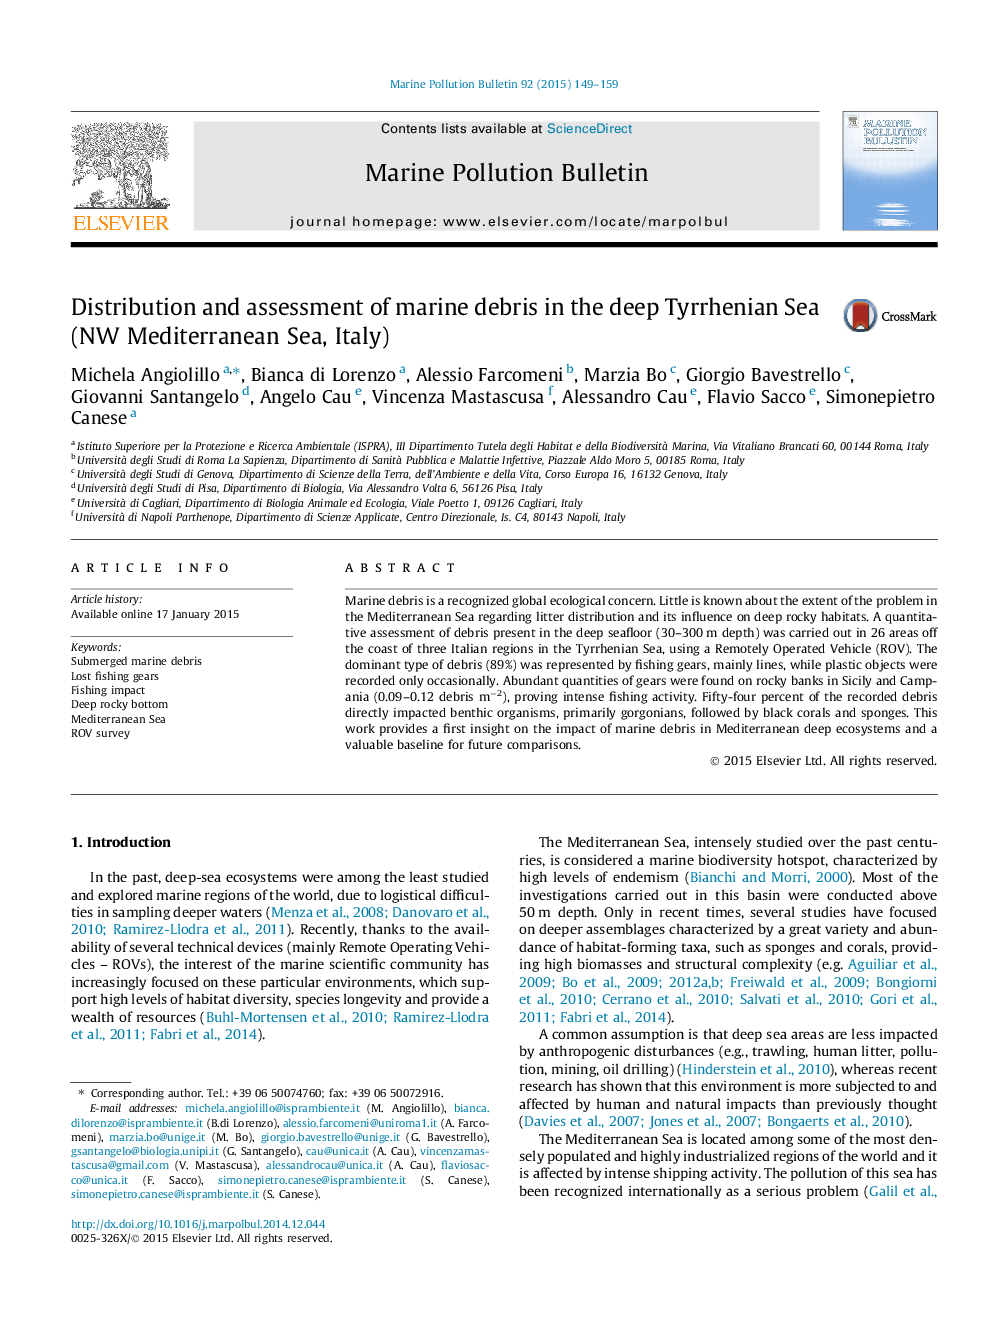 توزیع و ارزیابی بقایای دریایی در دریای خزر دریای خزر (دریای مدیترانه، ایتالیا) 